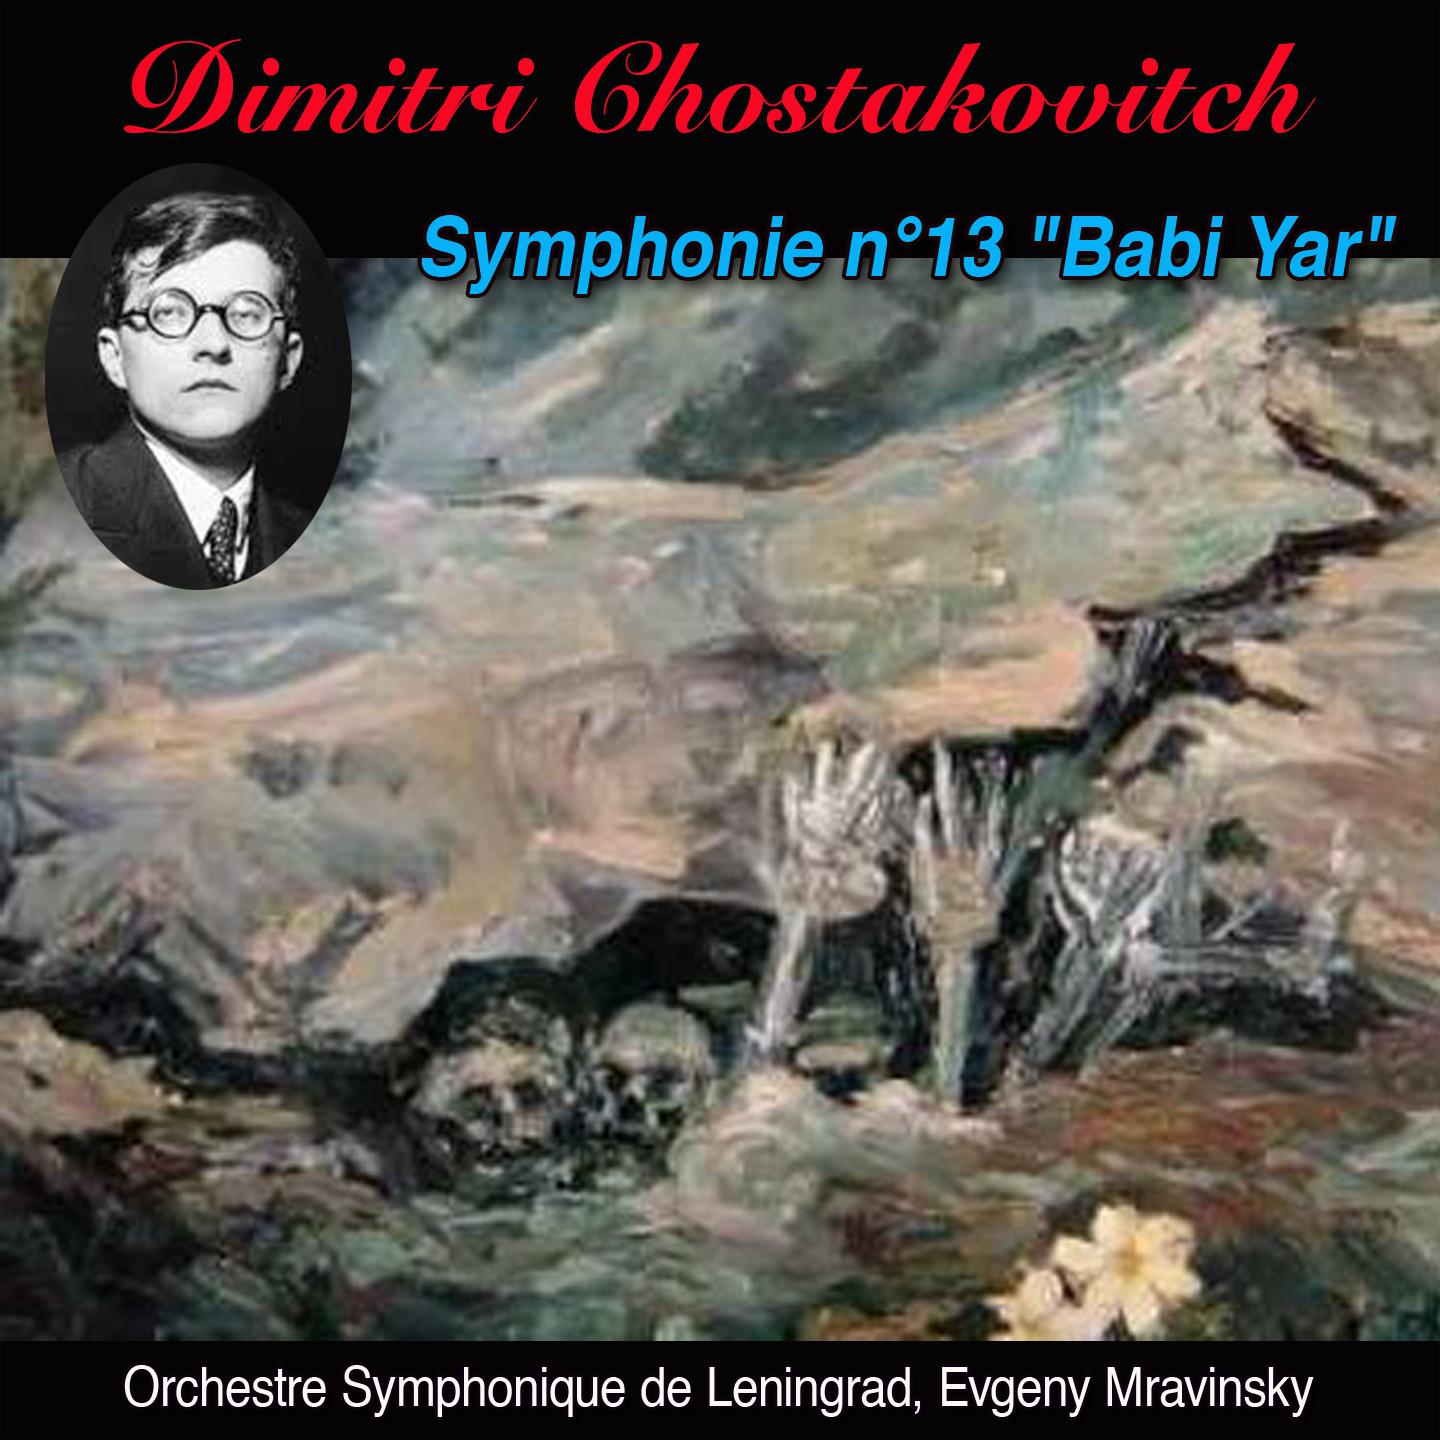 Babi yar largo (Symphonie n° 13 op. 113 "Babi yar")